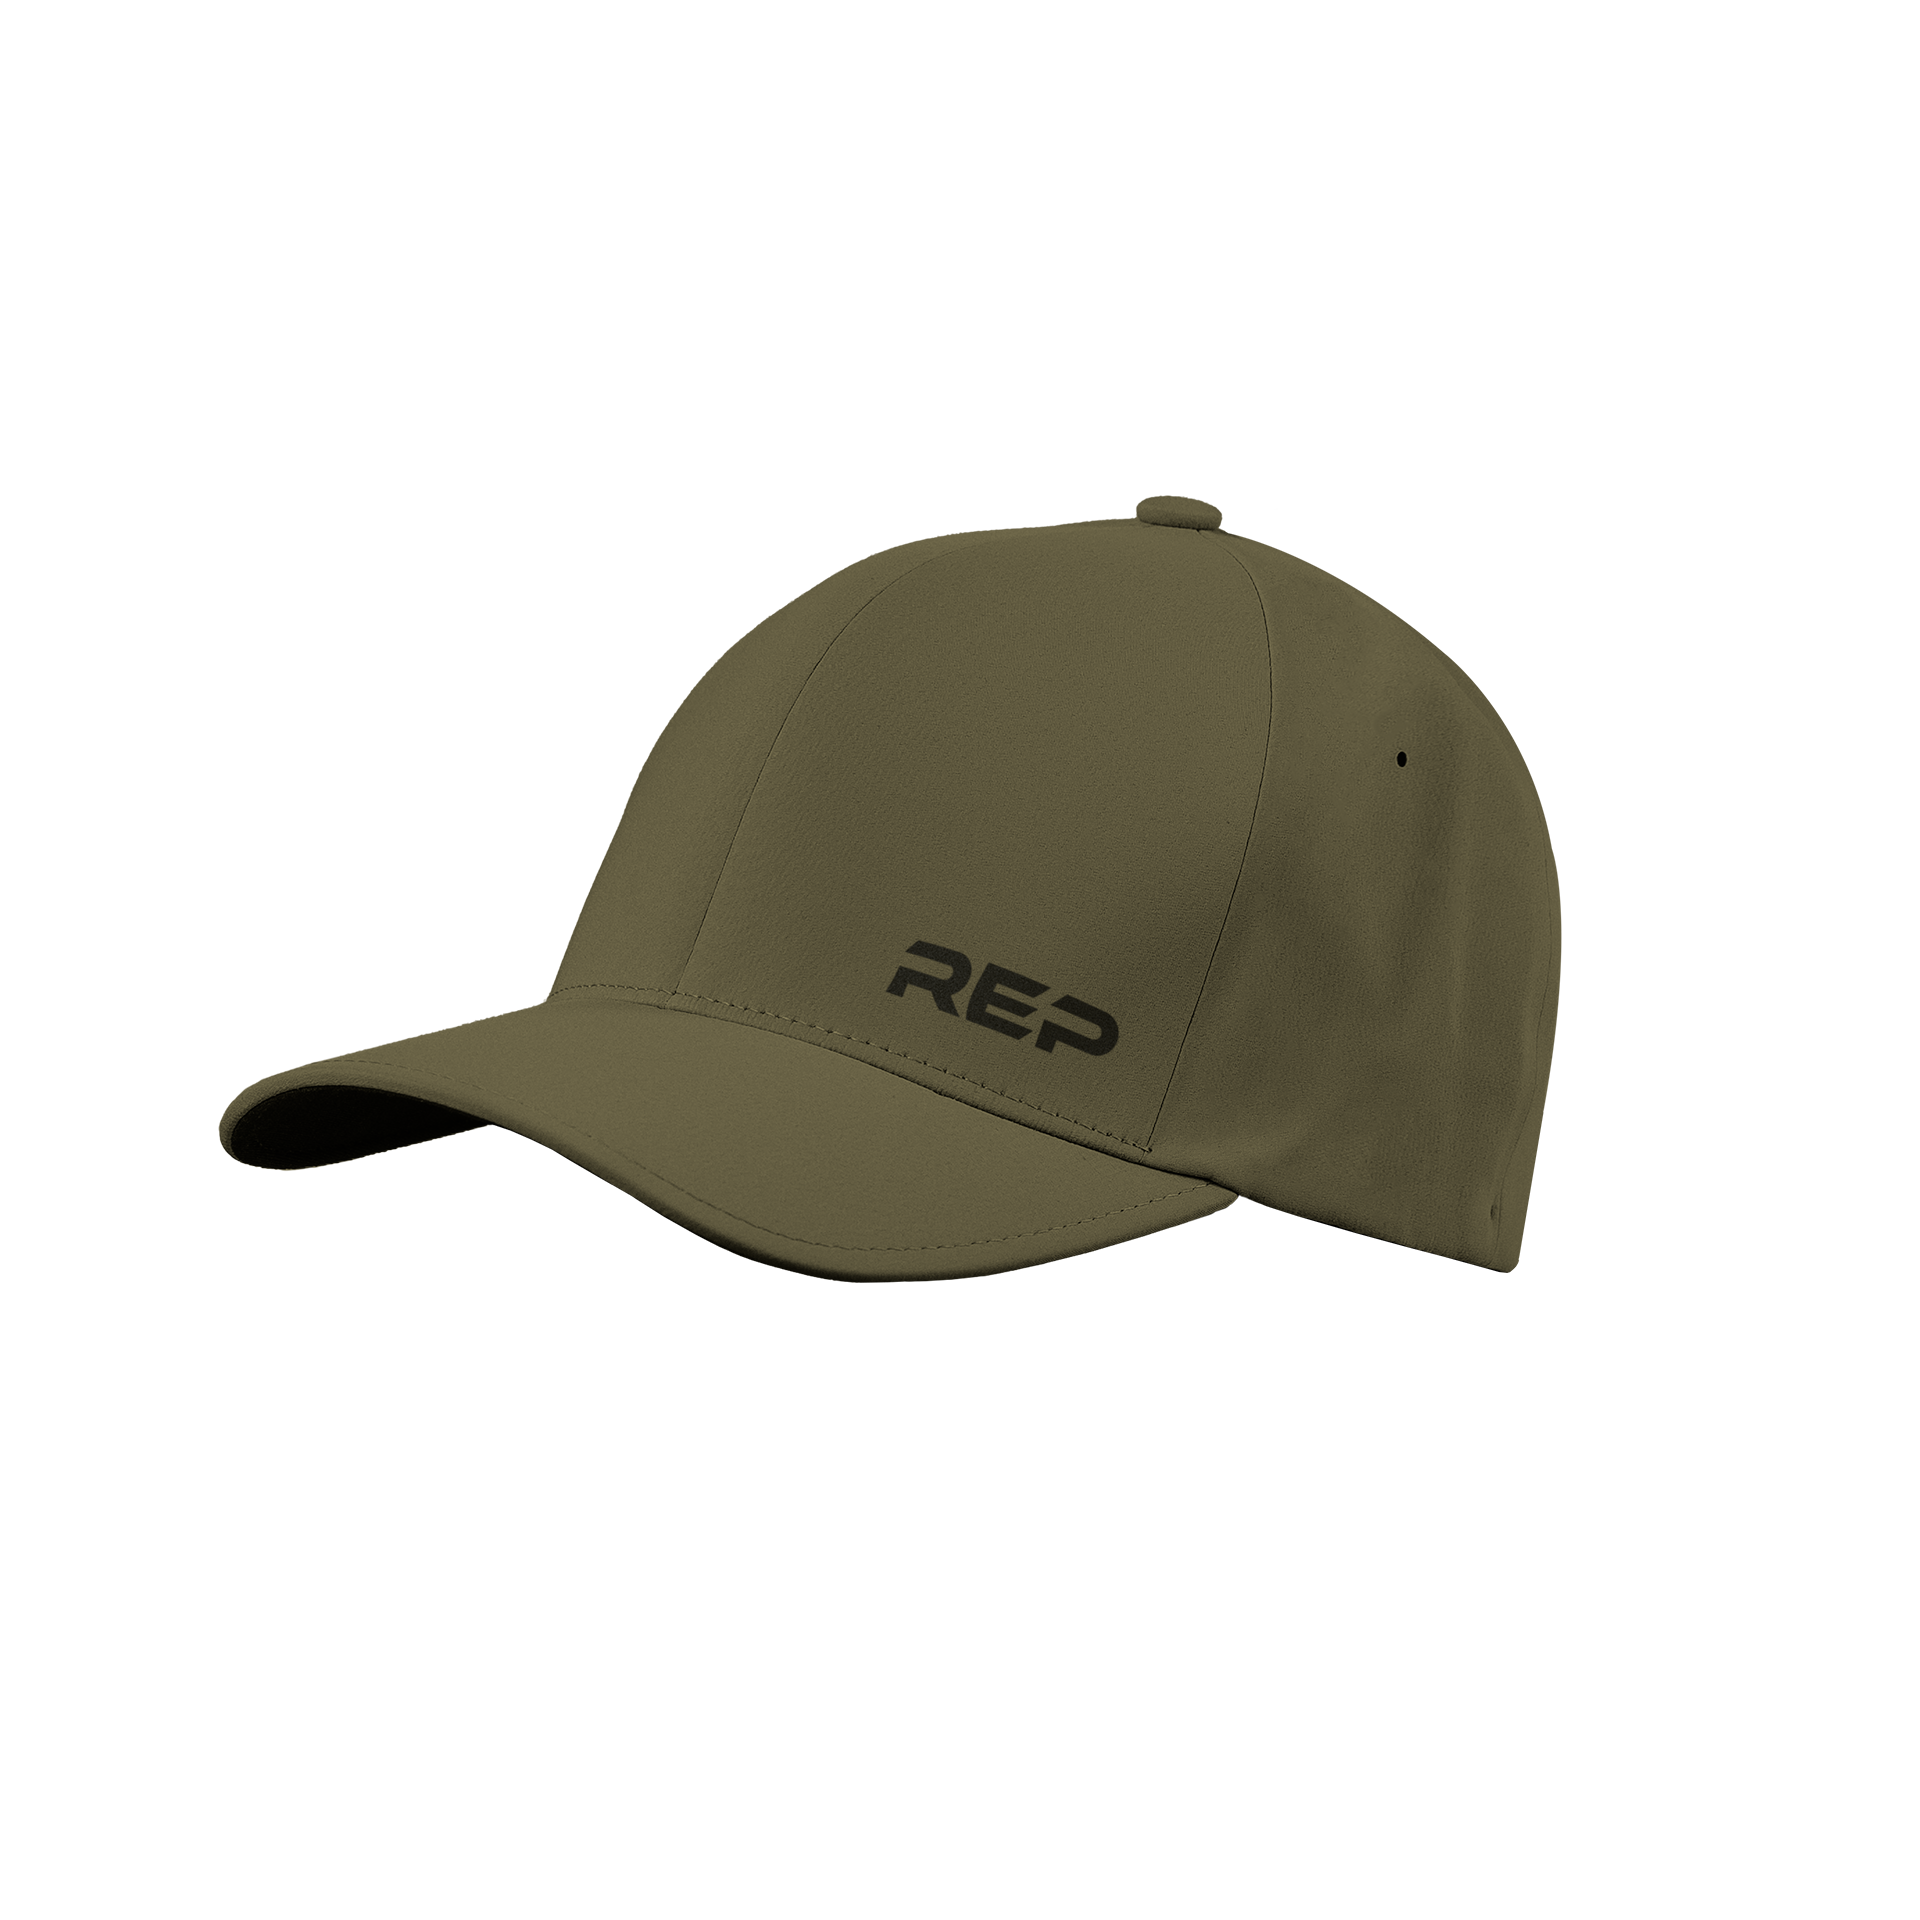 REP Performance Cap - Olive/Black / S/M (6 3/4